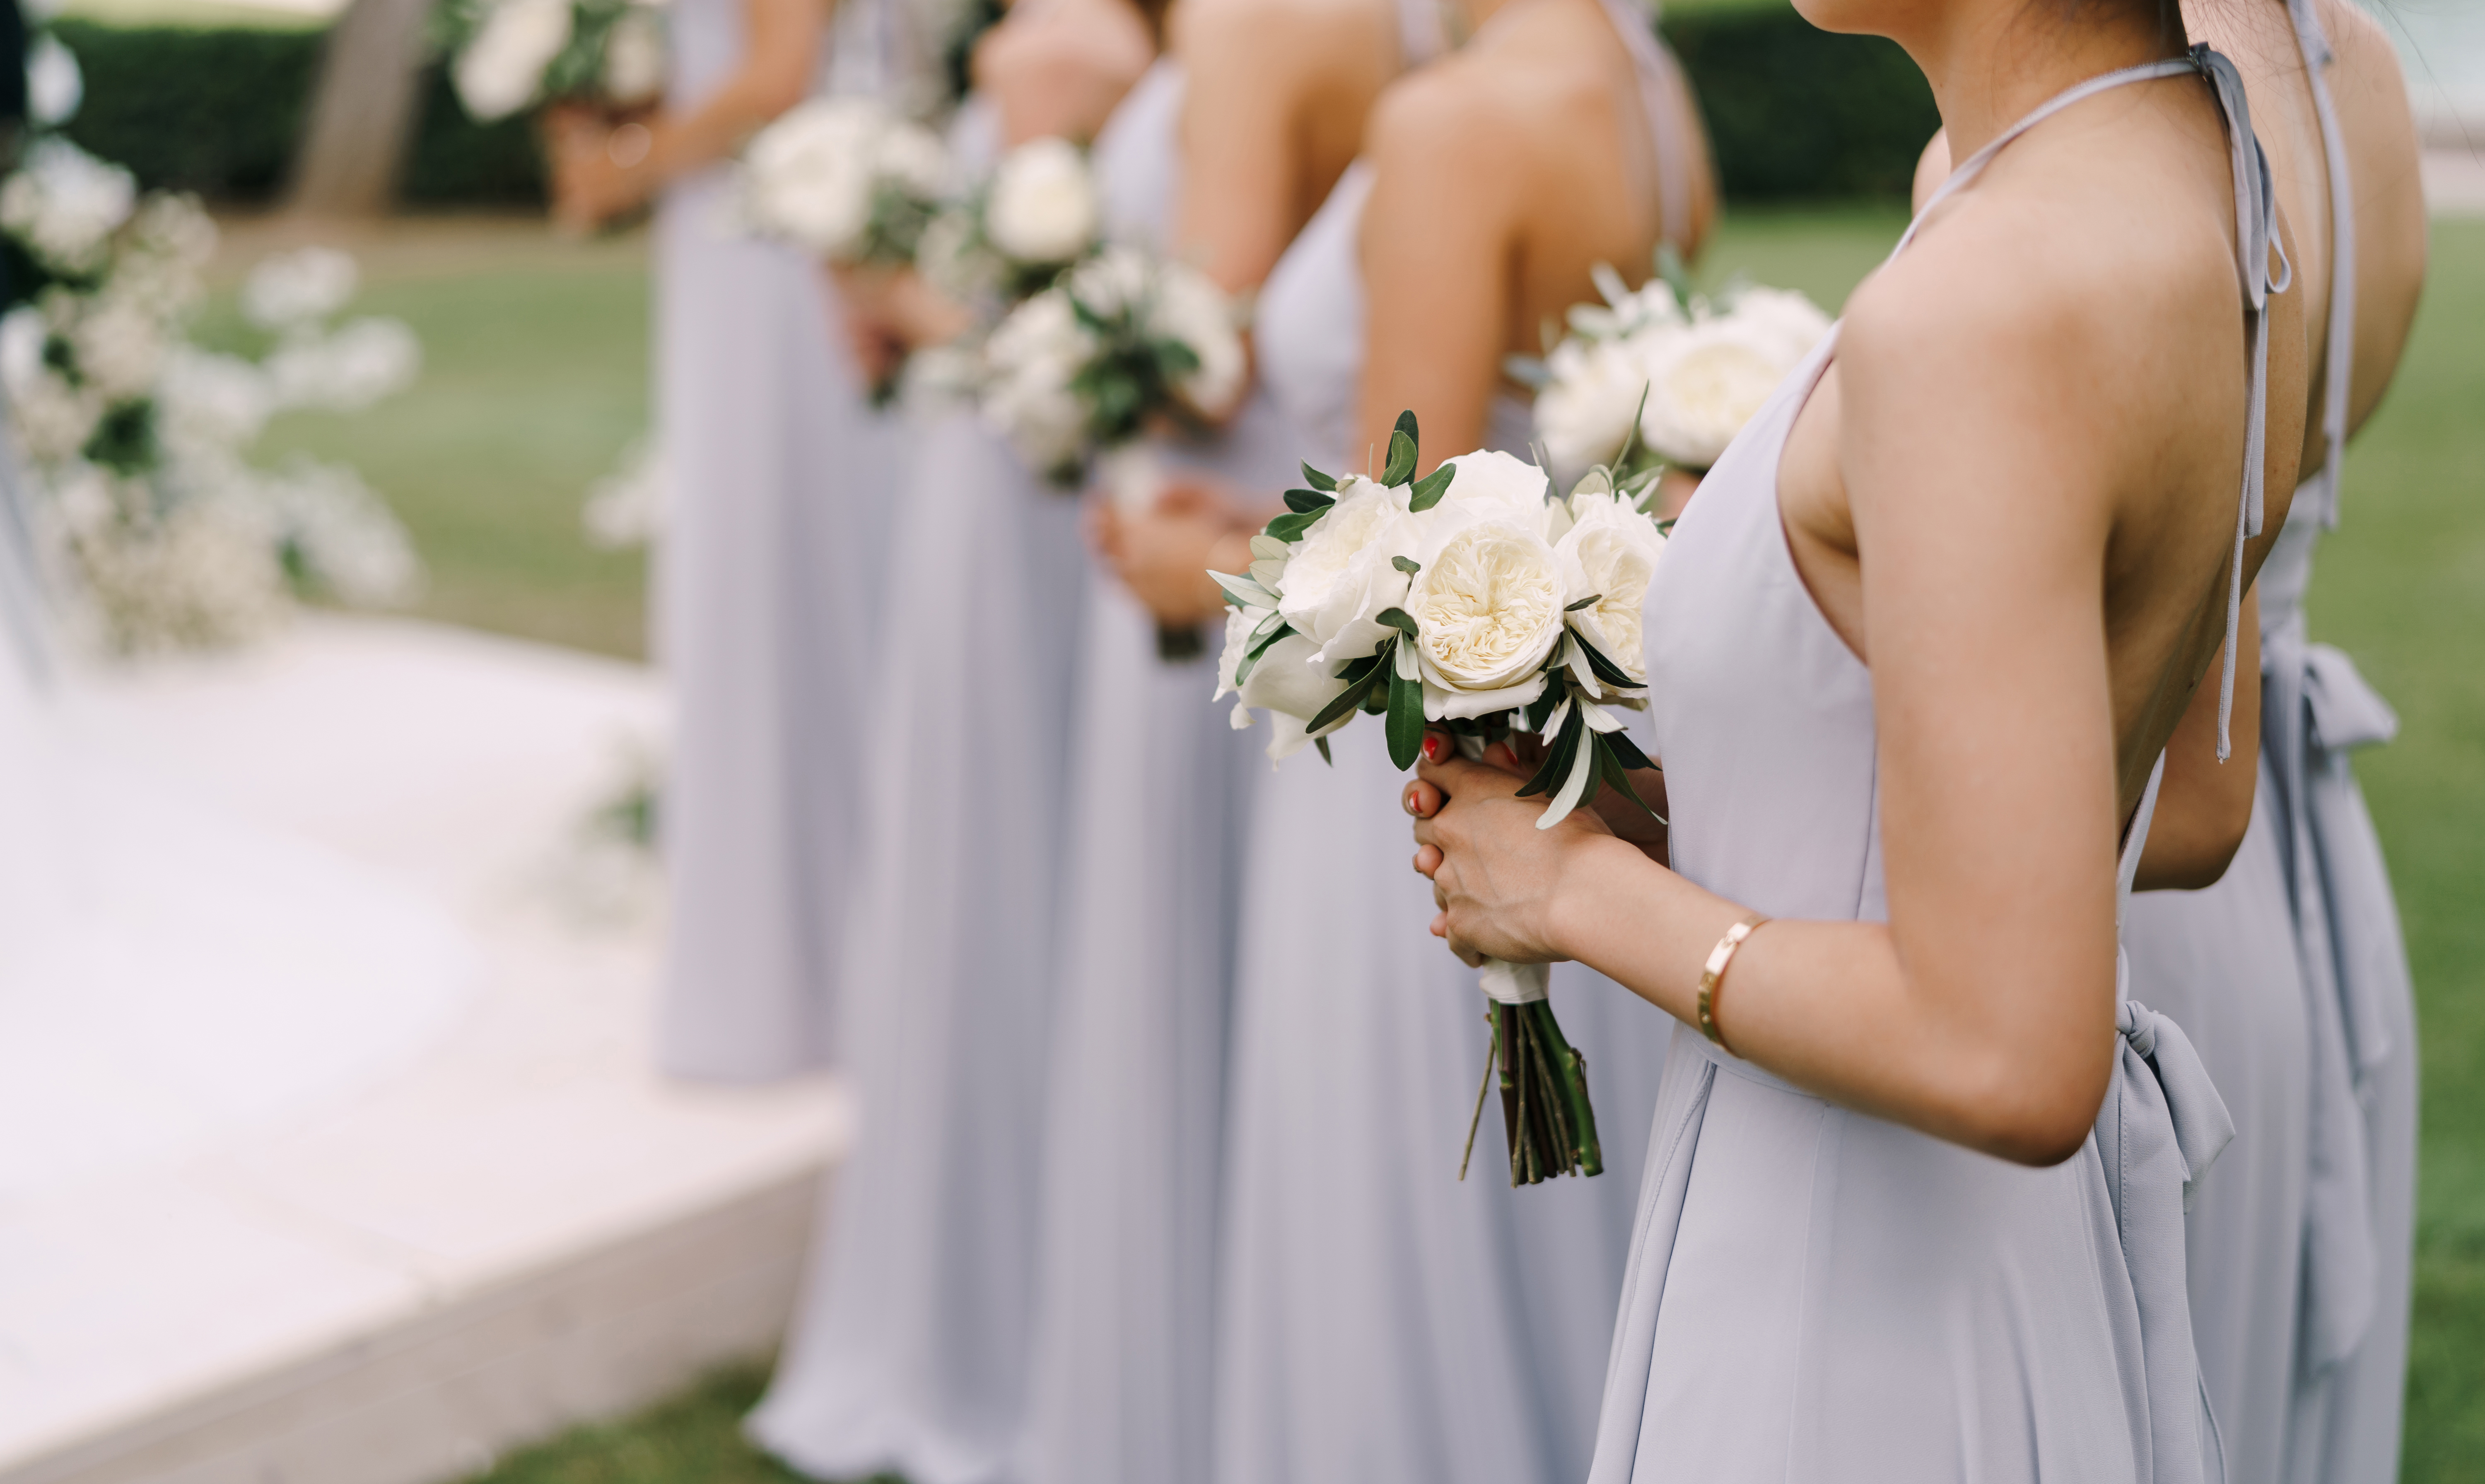 Sechs Brautjungfern mit Blumensträußen | Quelle: Shutterstock